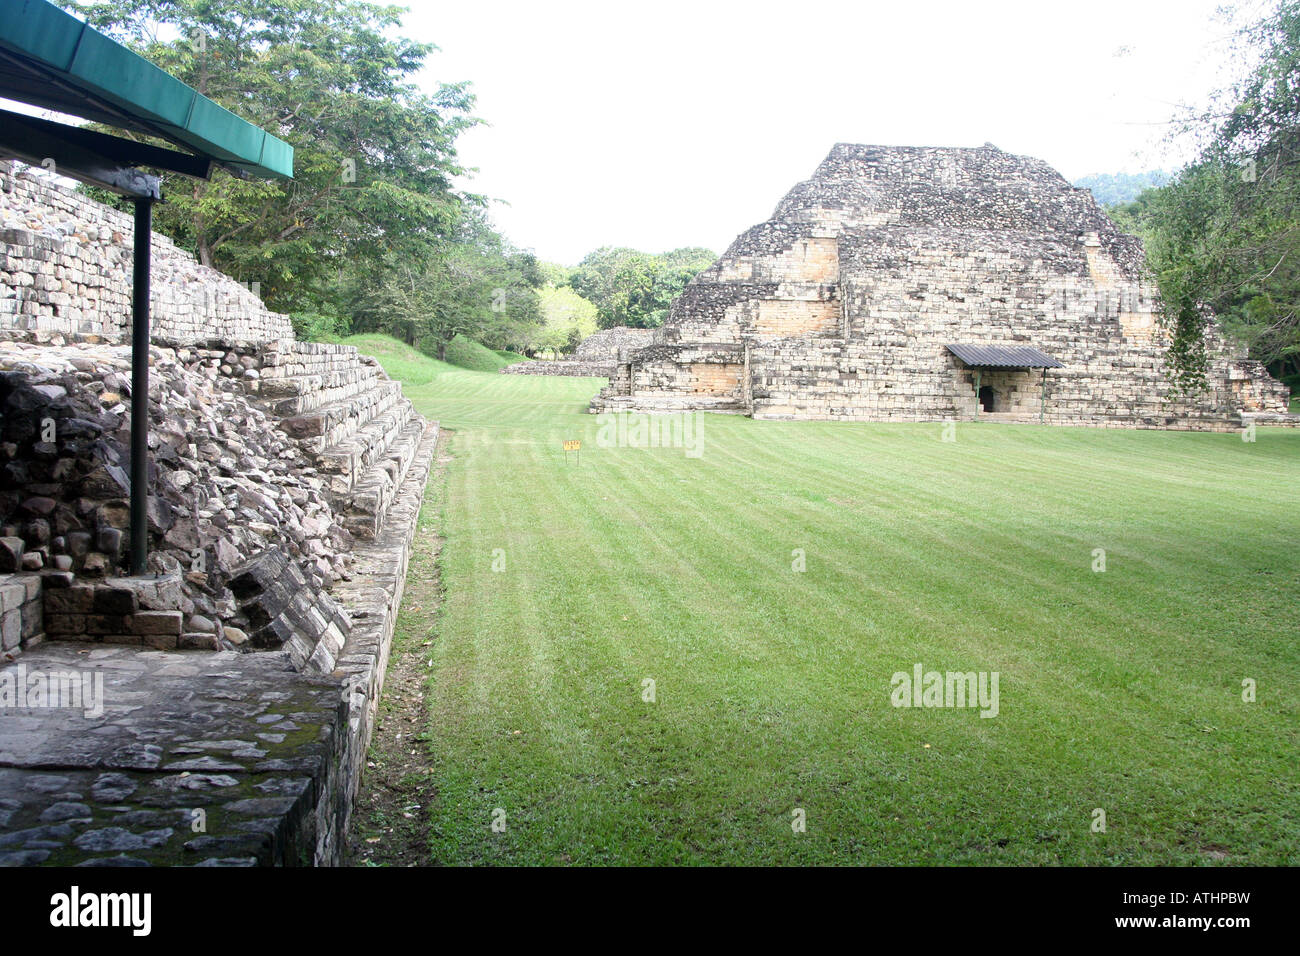 Les ruines mayas et pyraimds de El Puente, près de la ville de La Entrada, Honduras Copan ou non loin de la frontière guatémaltèque. Banque D'Images